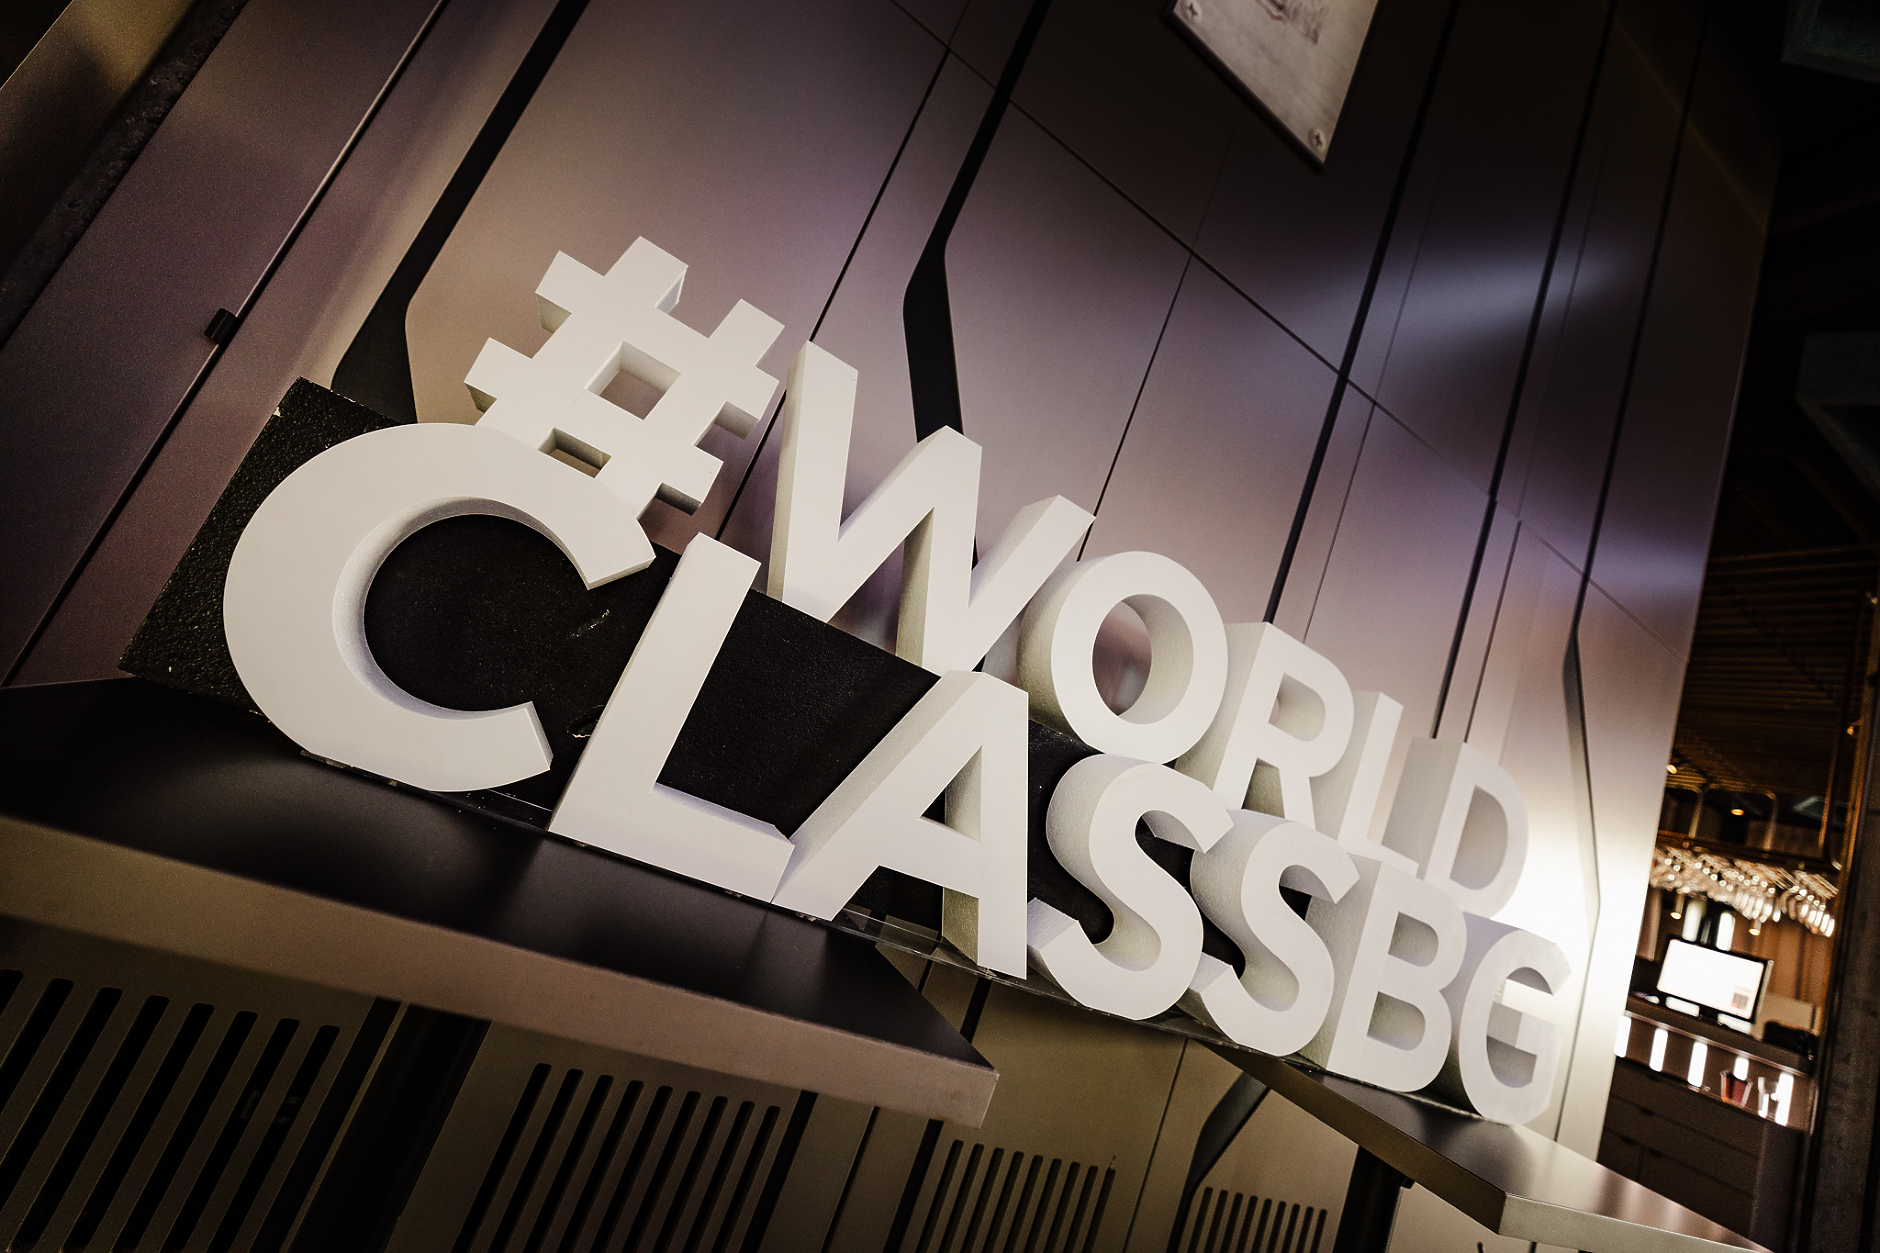 World Class търси своя шампион в България на 15 май